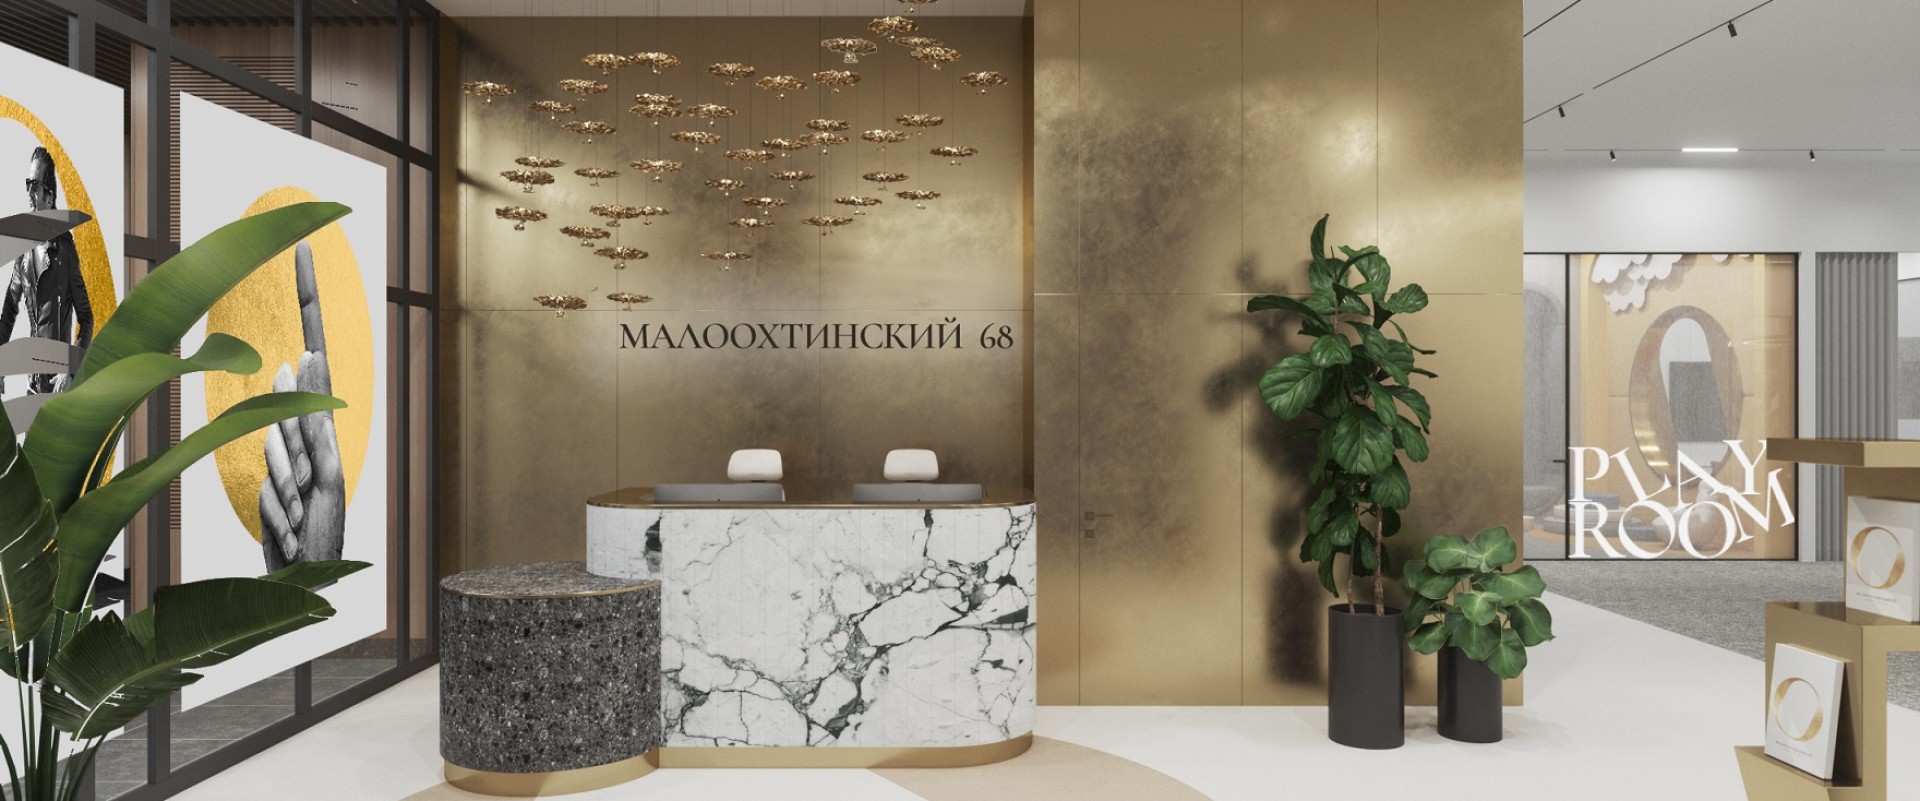 Проект офиса продаж ЖК «Малоохтинский, 68» — пространство, которое привлекает покупателей 